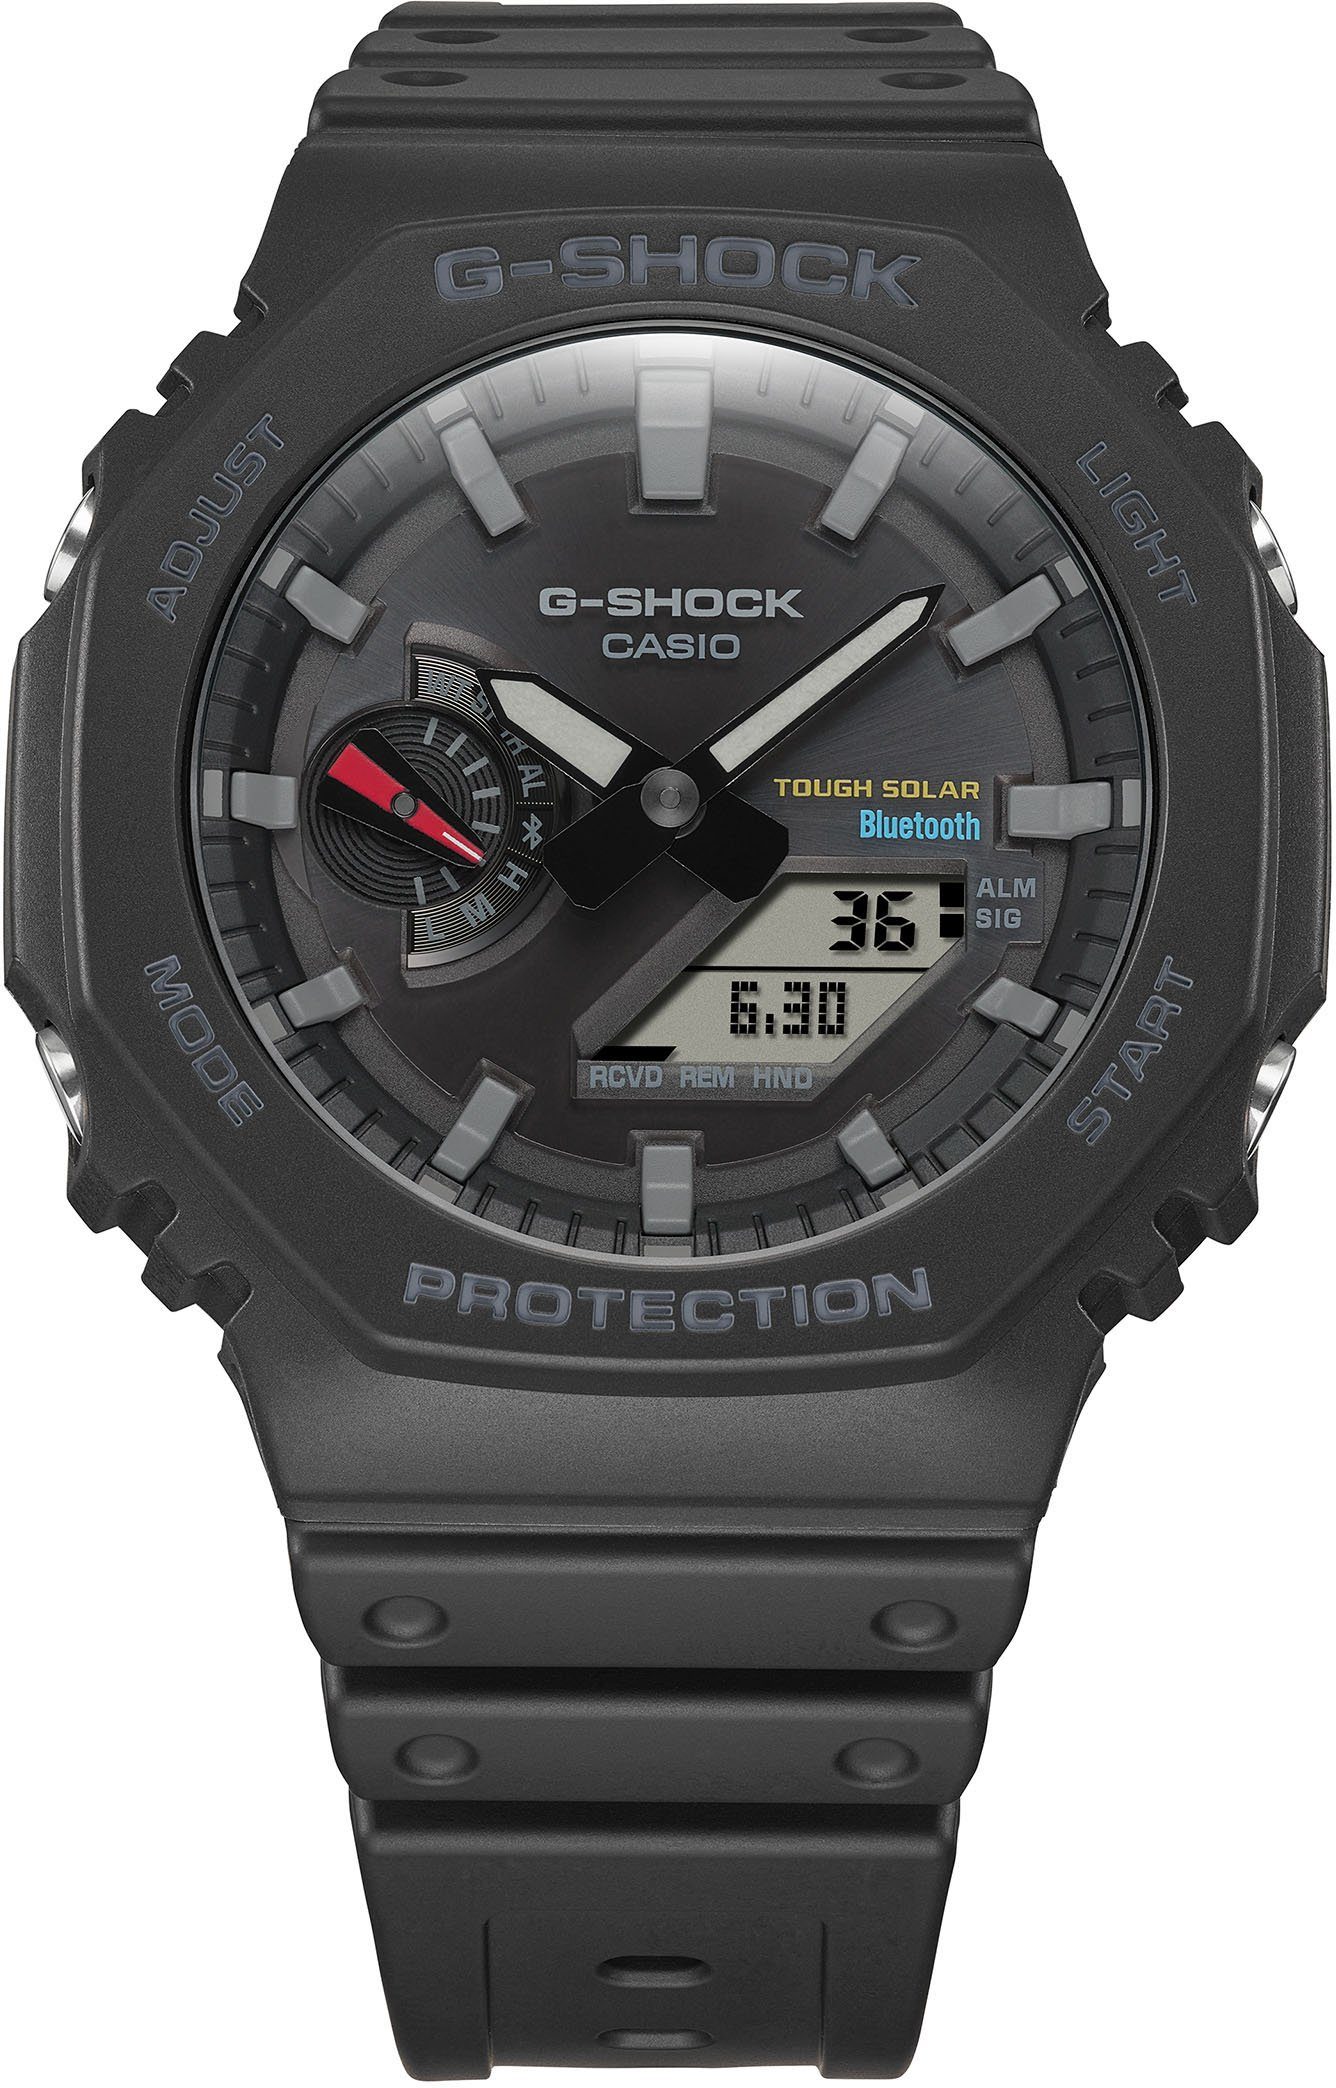 Smartwatch, Solar GA-B2100-1AER G-SHOCK CASIO